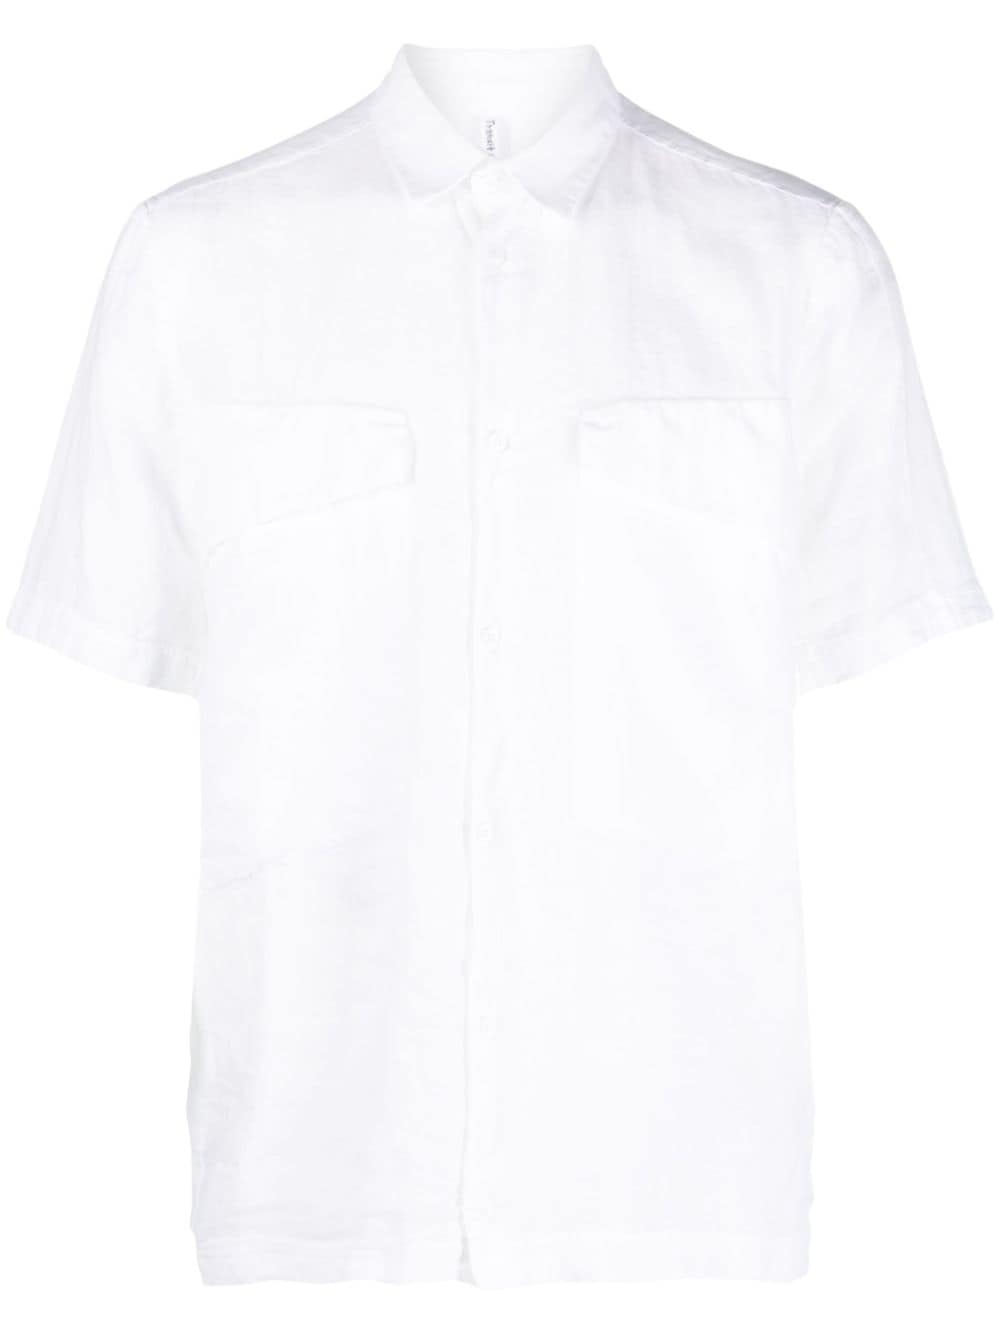 Transit short-sleeve linen-cotton shirt - White von Transit